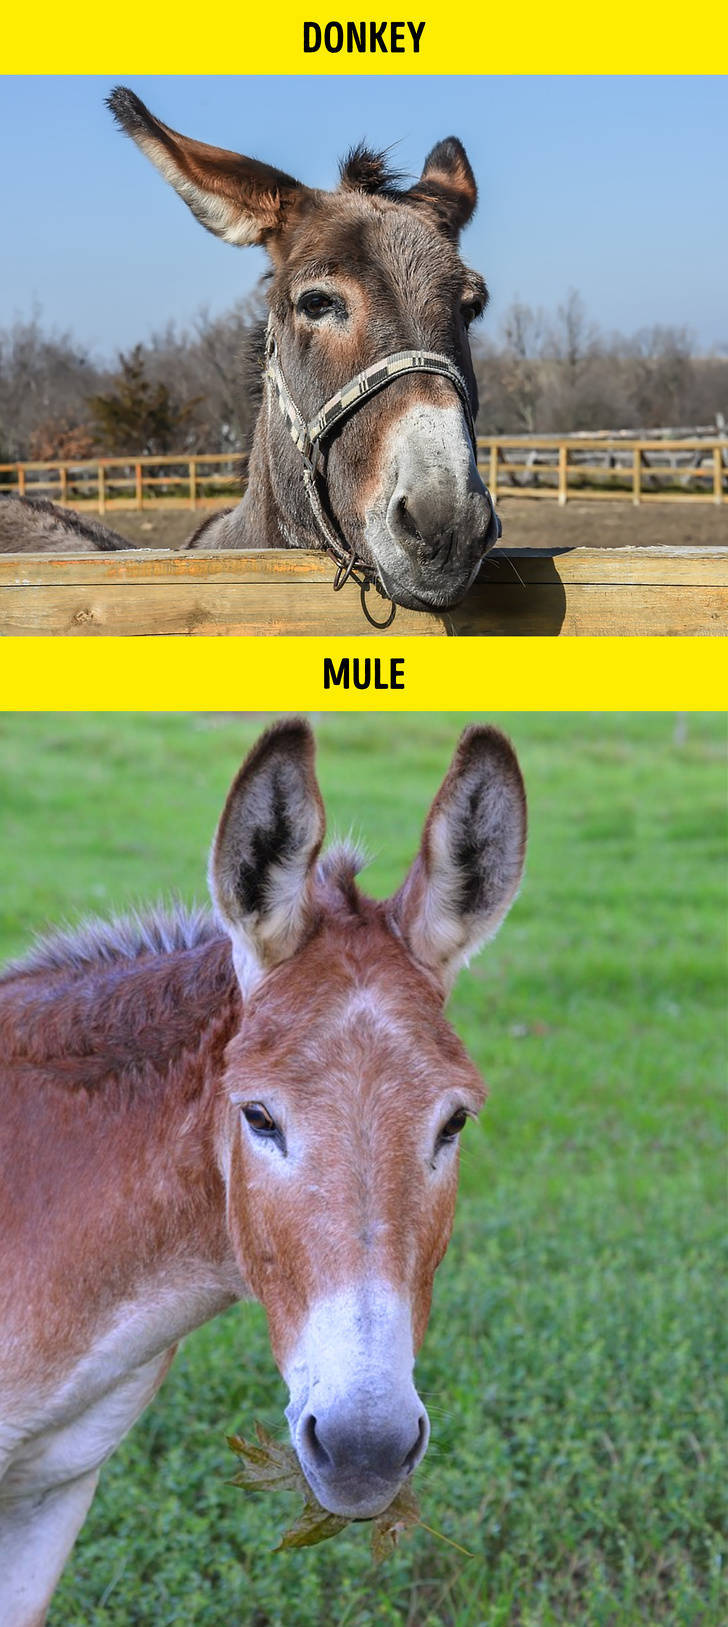 Donkey - Donkey Mule